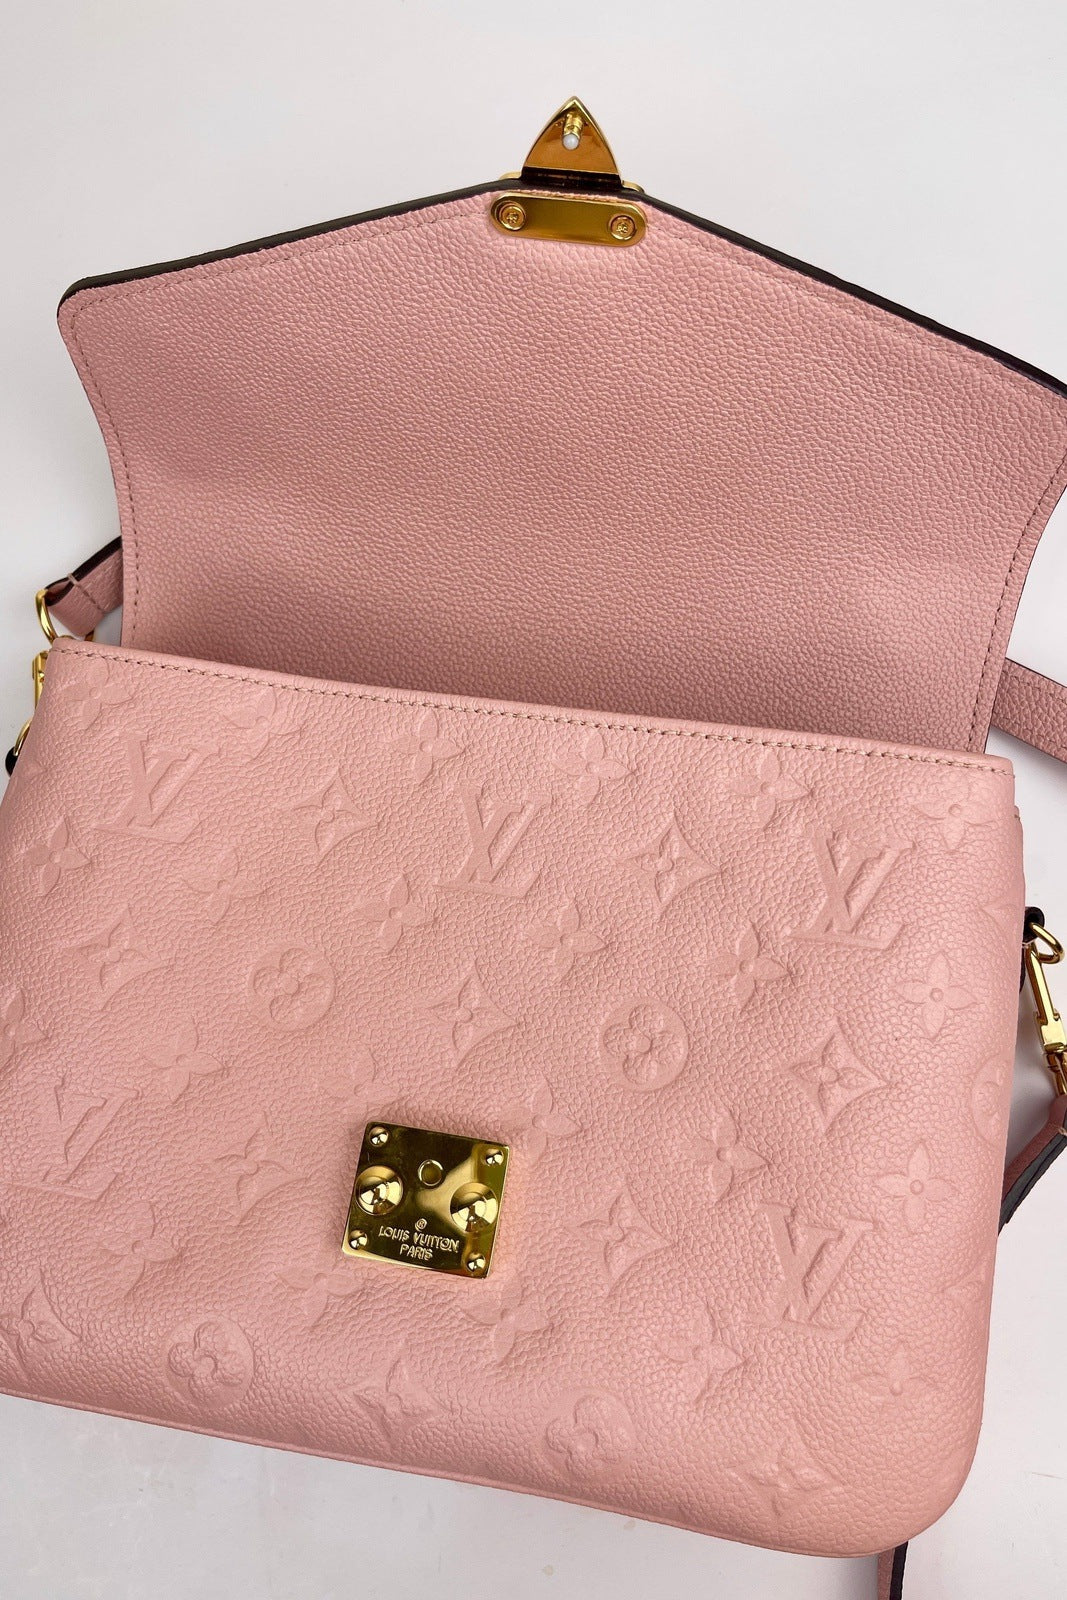 Louis Vuitton Pochette Metis Pink Poudre Bag-Louis Vuitton Pochette Metis  Pink Poudre Bag-RELOVE DELUXE